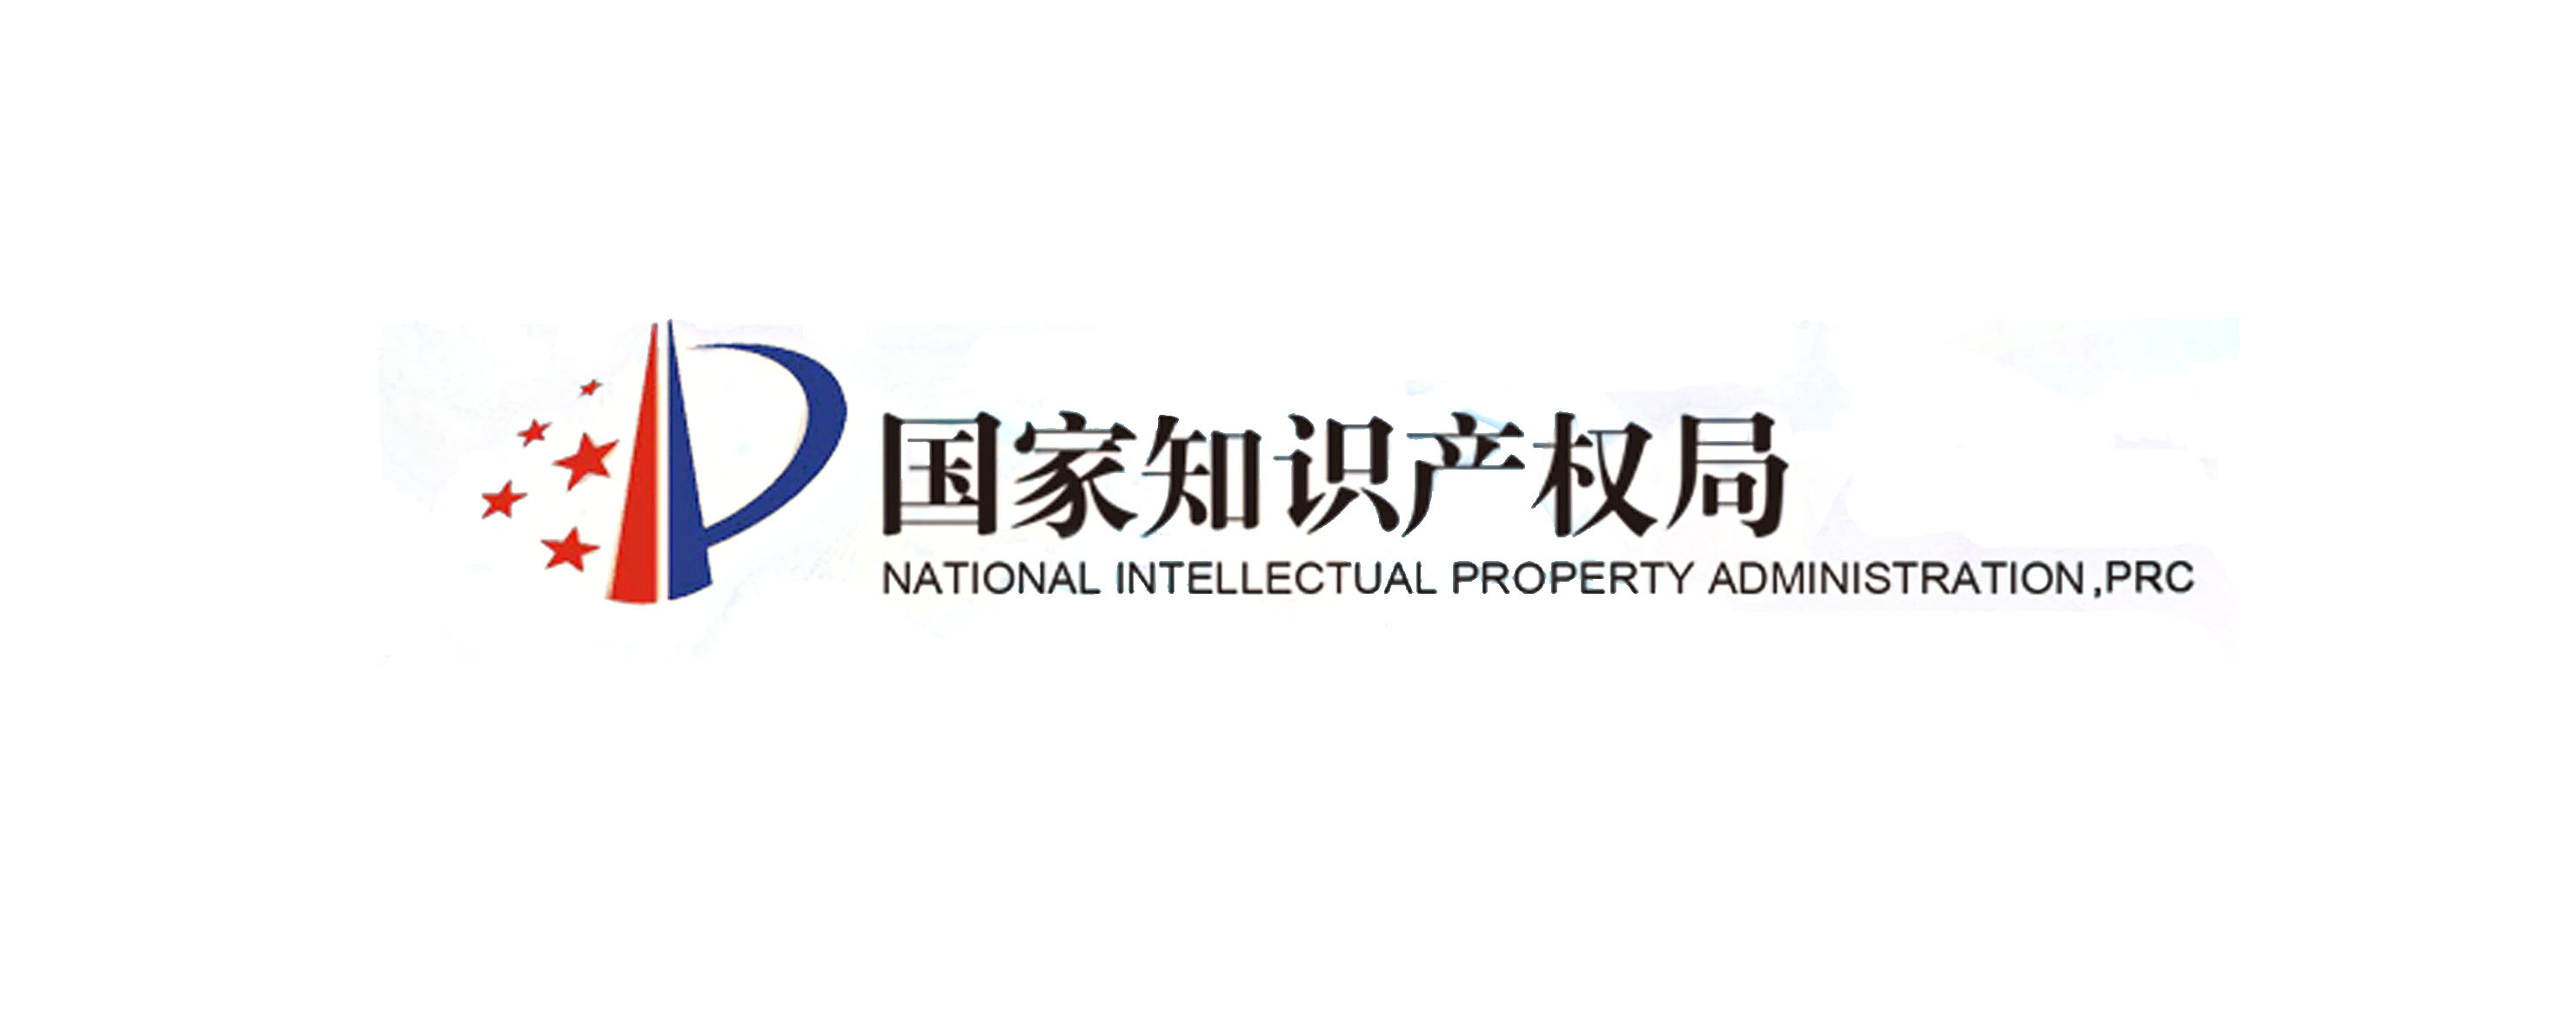 国家知识产权局重归国务院直属机构(中国知识产权)